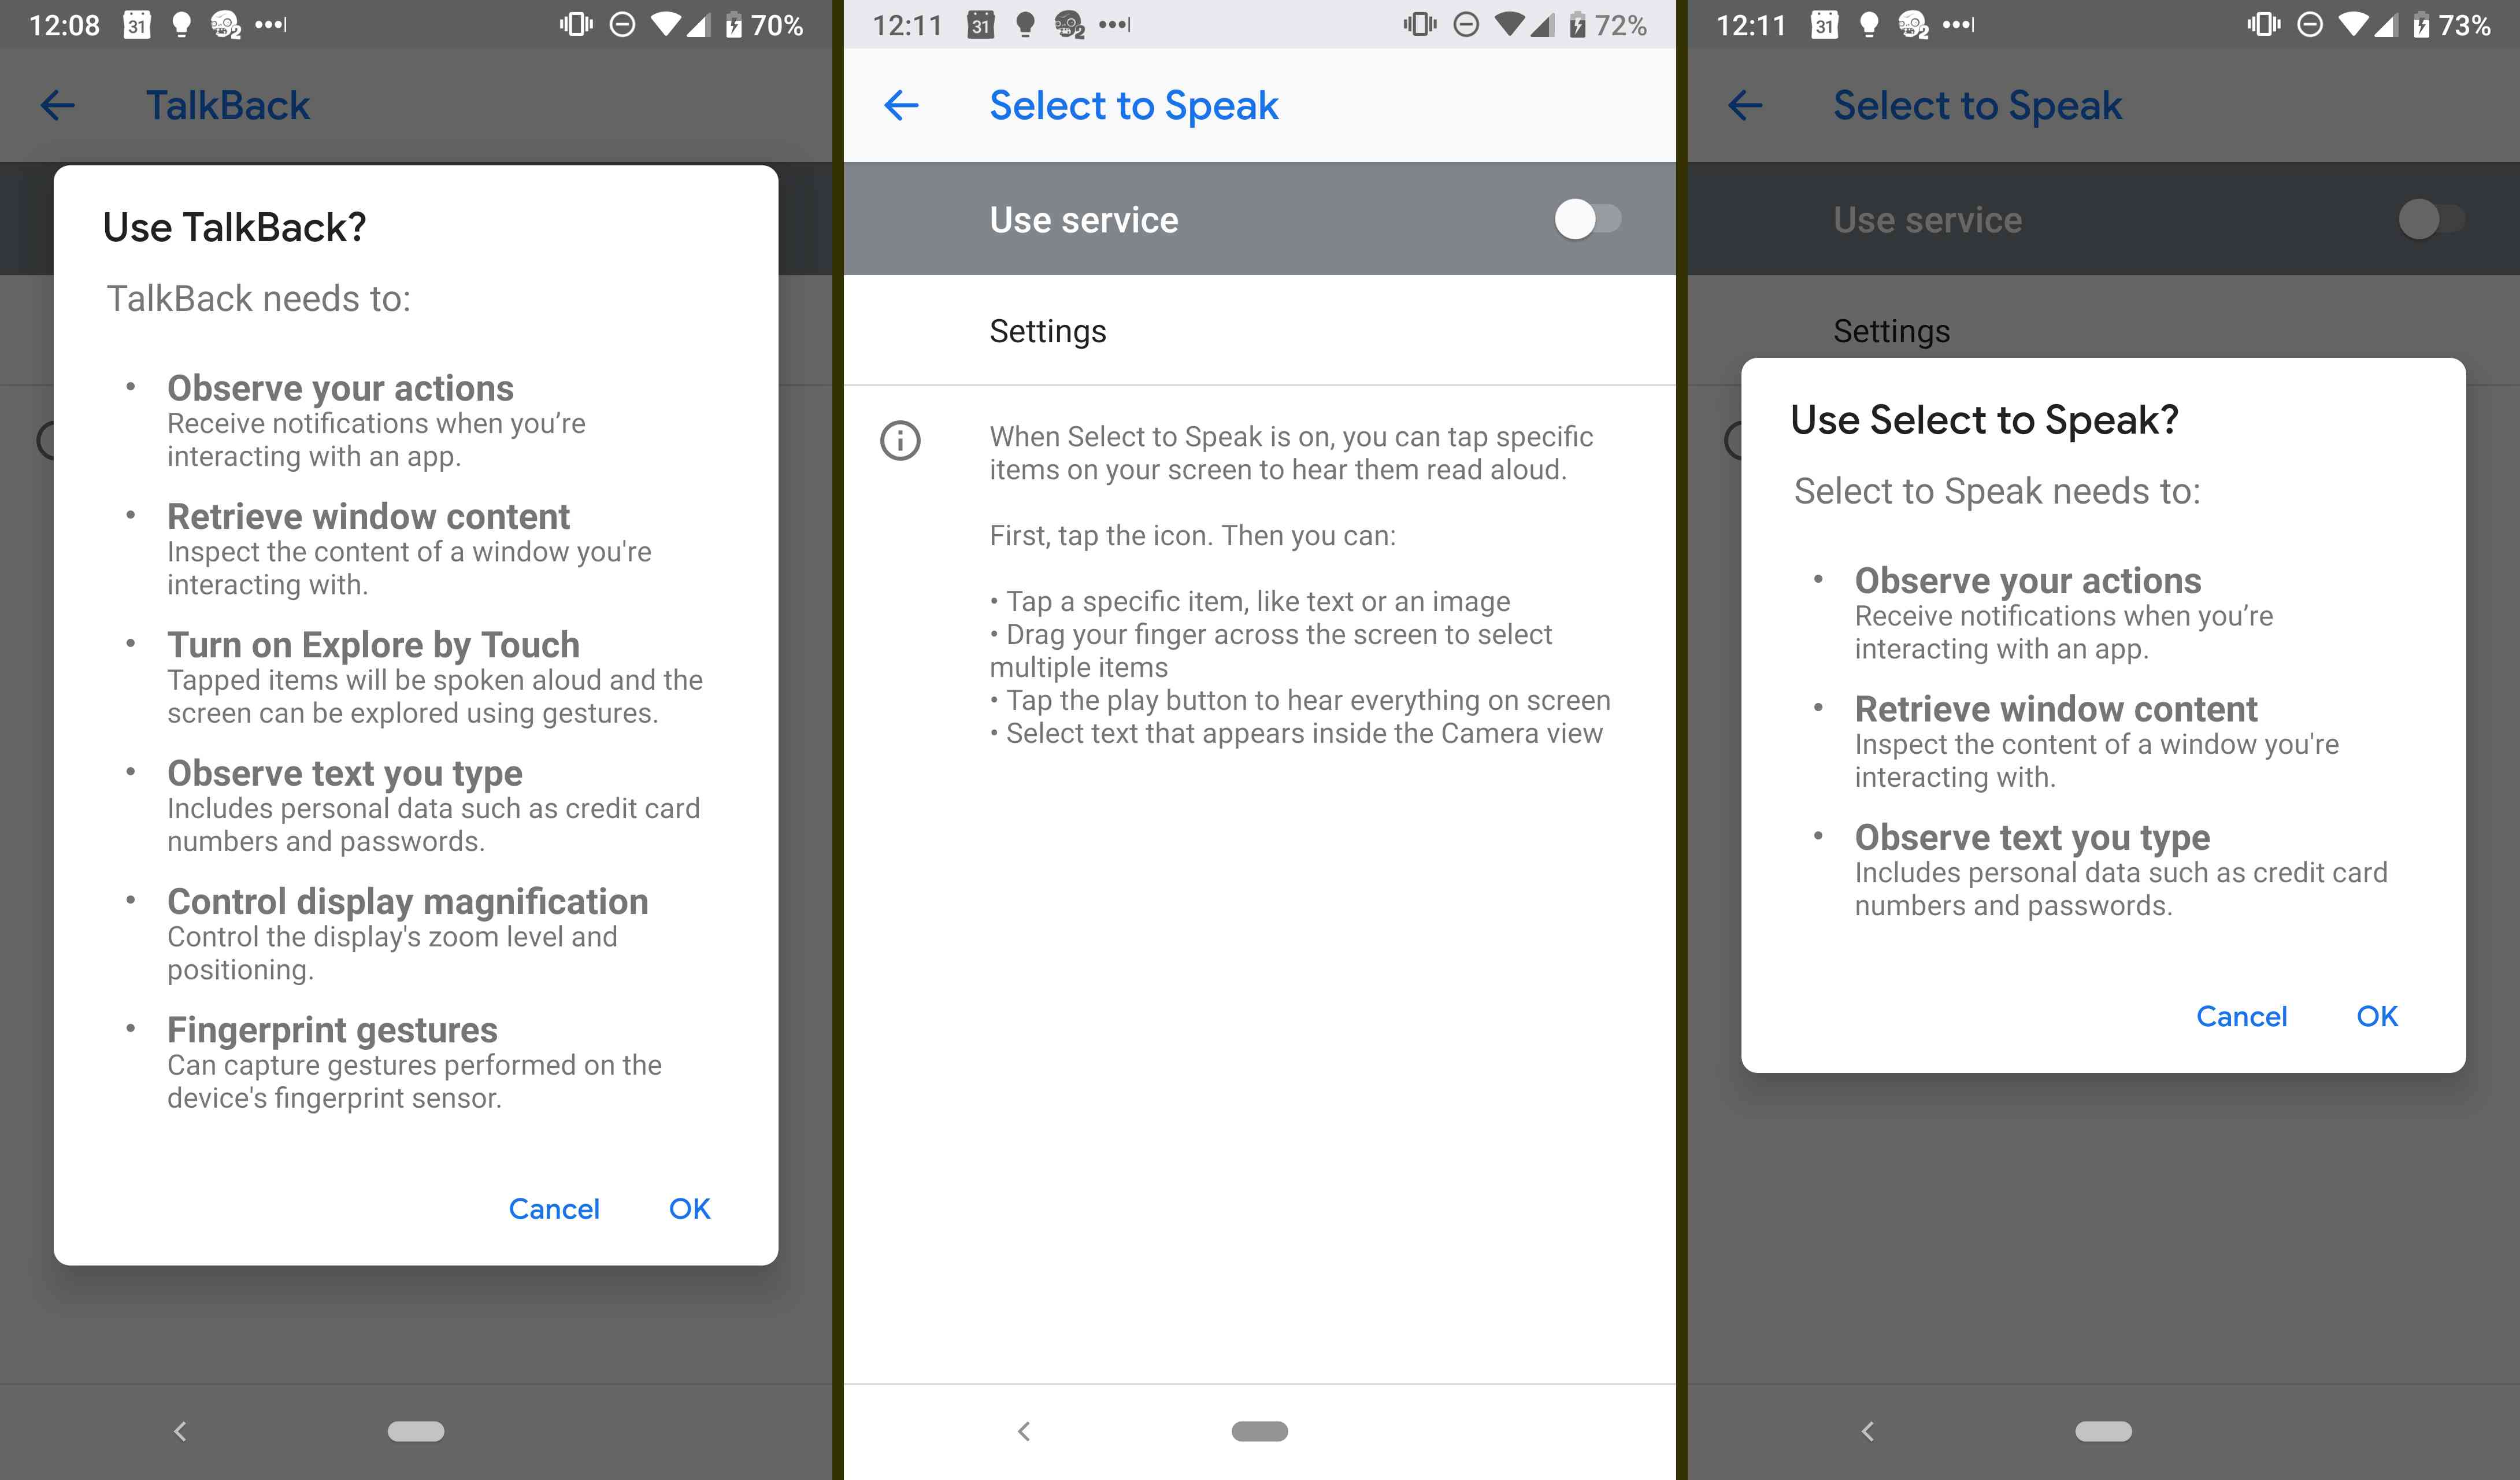 Android's talkback och välj att tala funktioner.